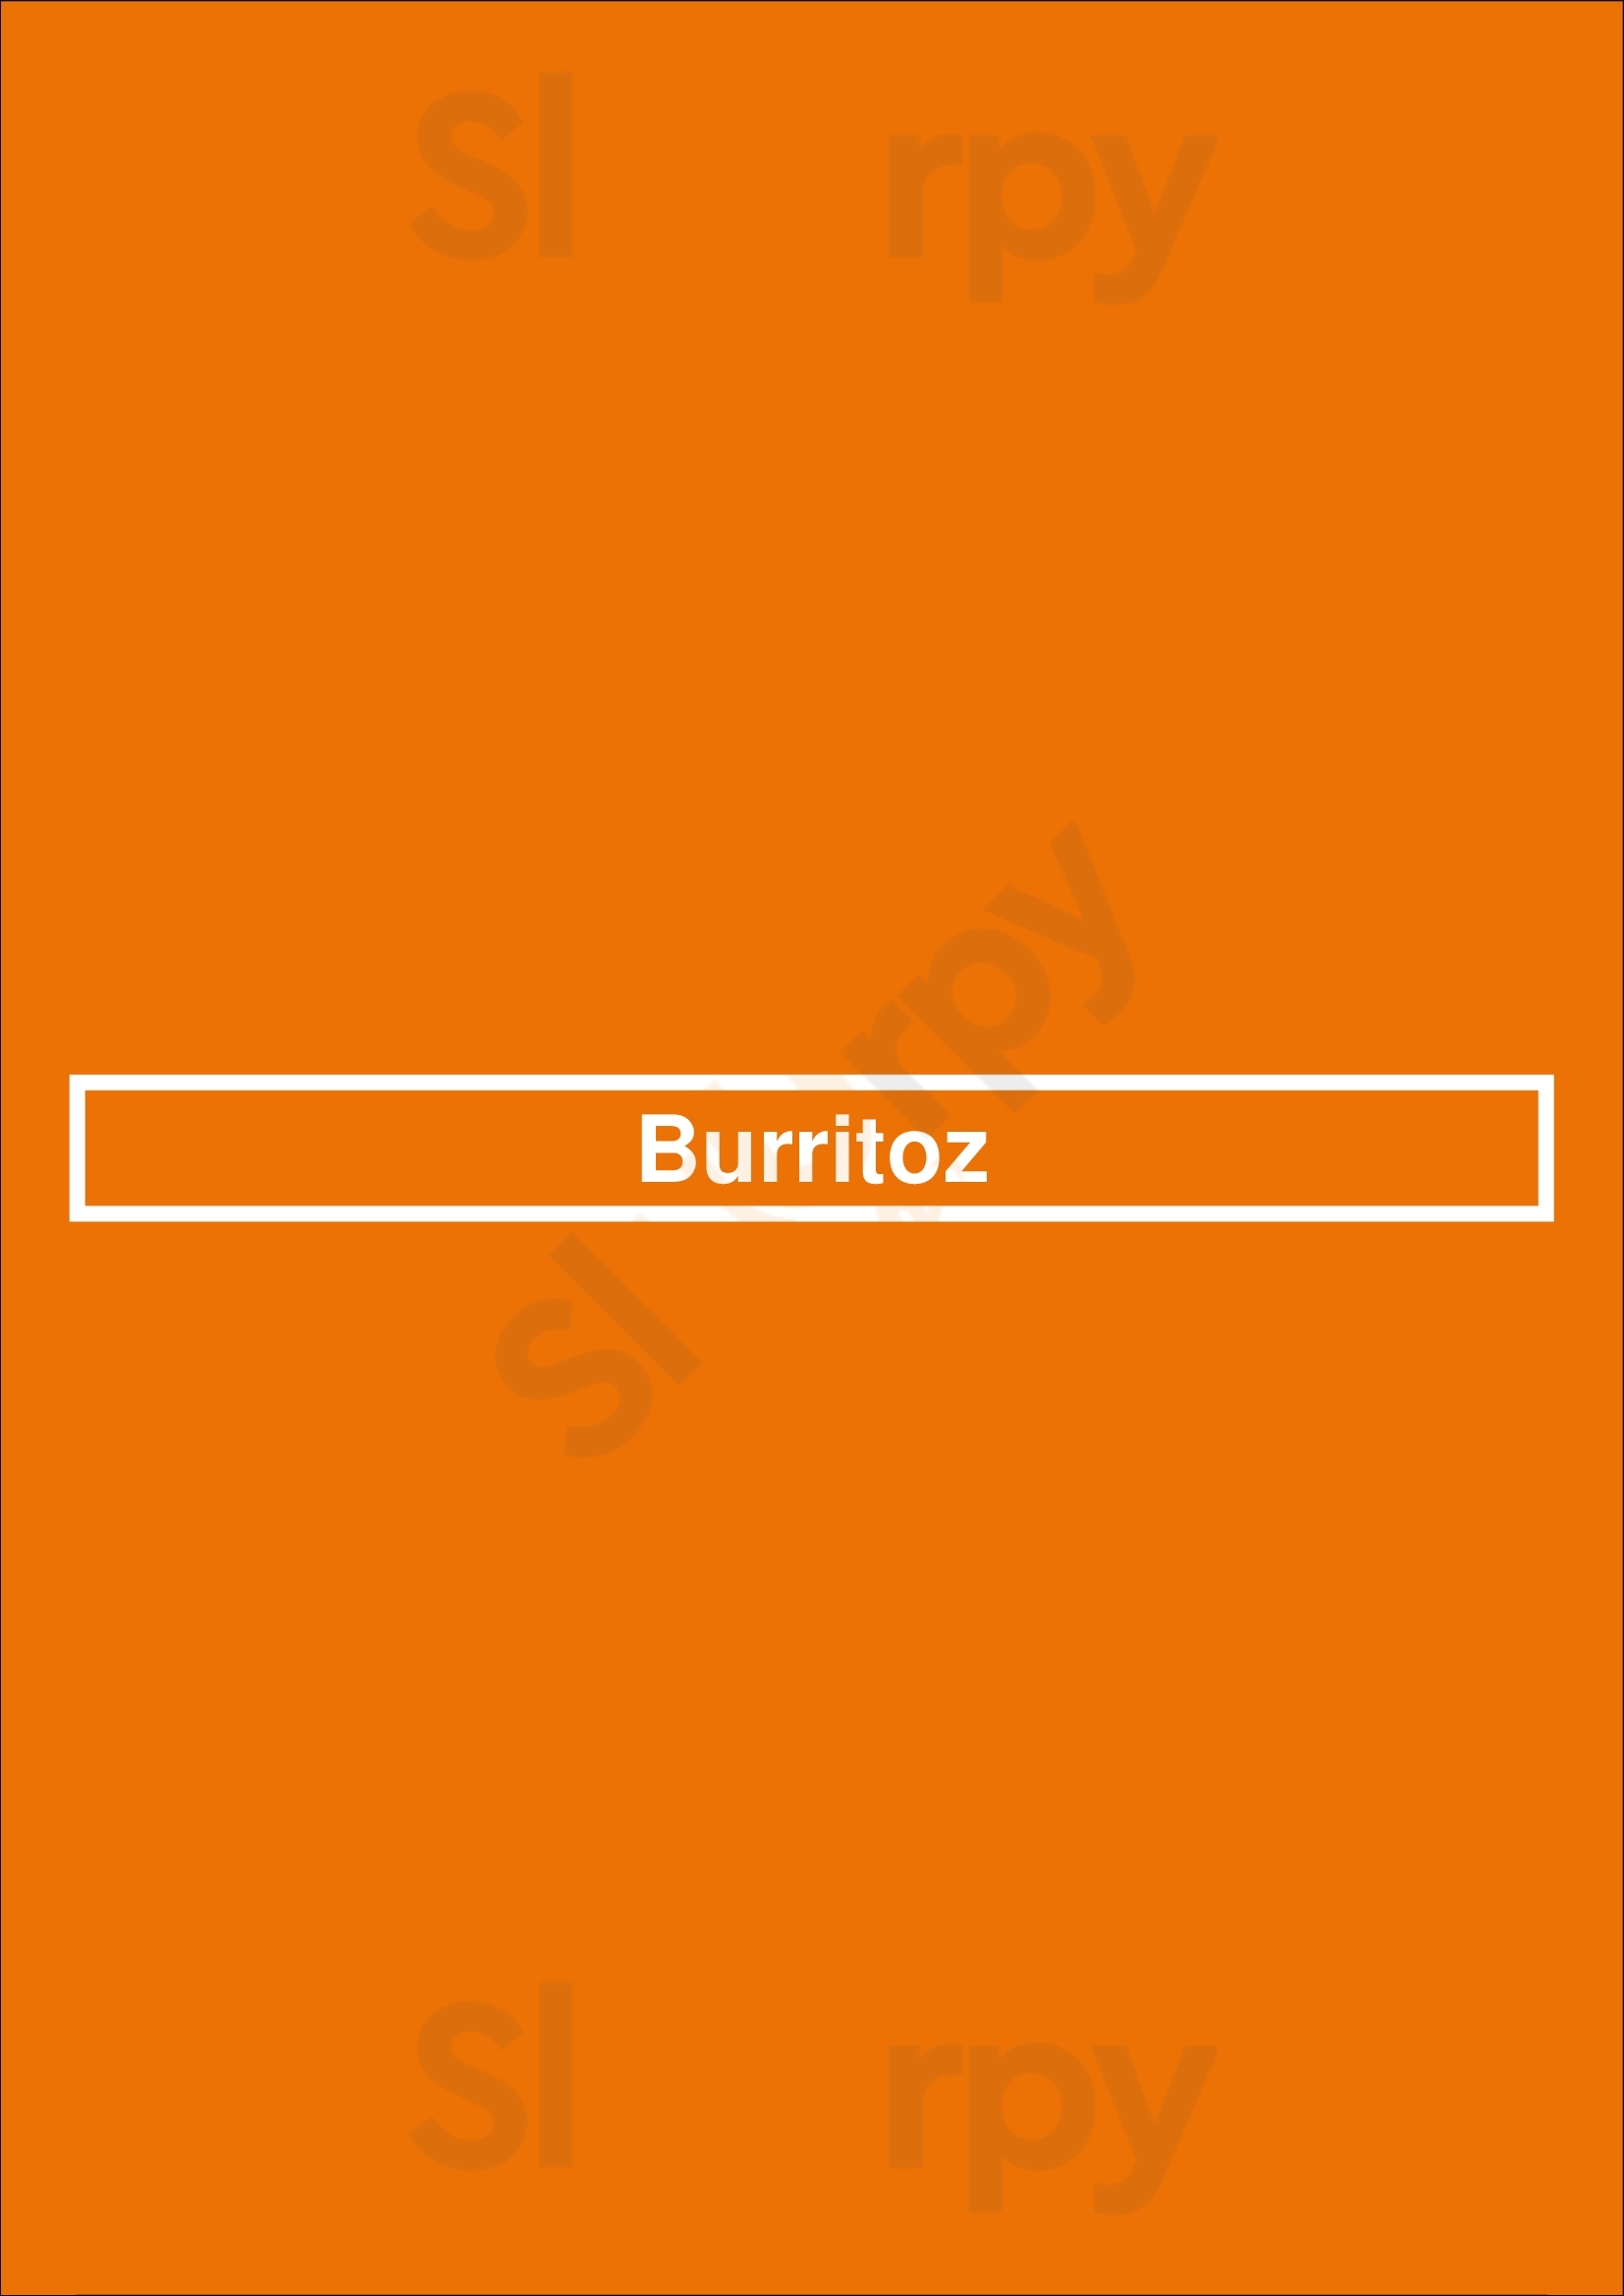 Burritoz Burlington Menu - 1